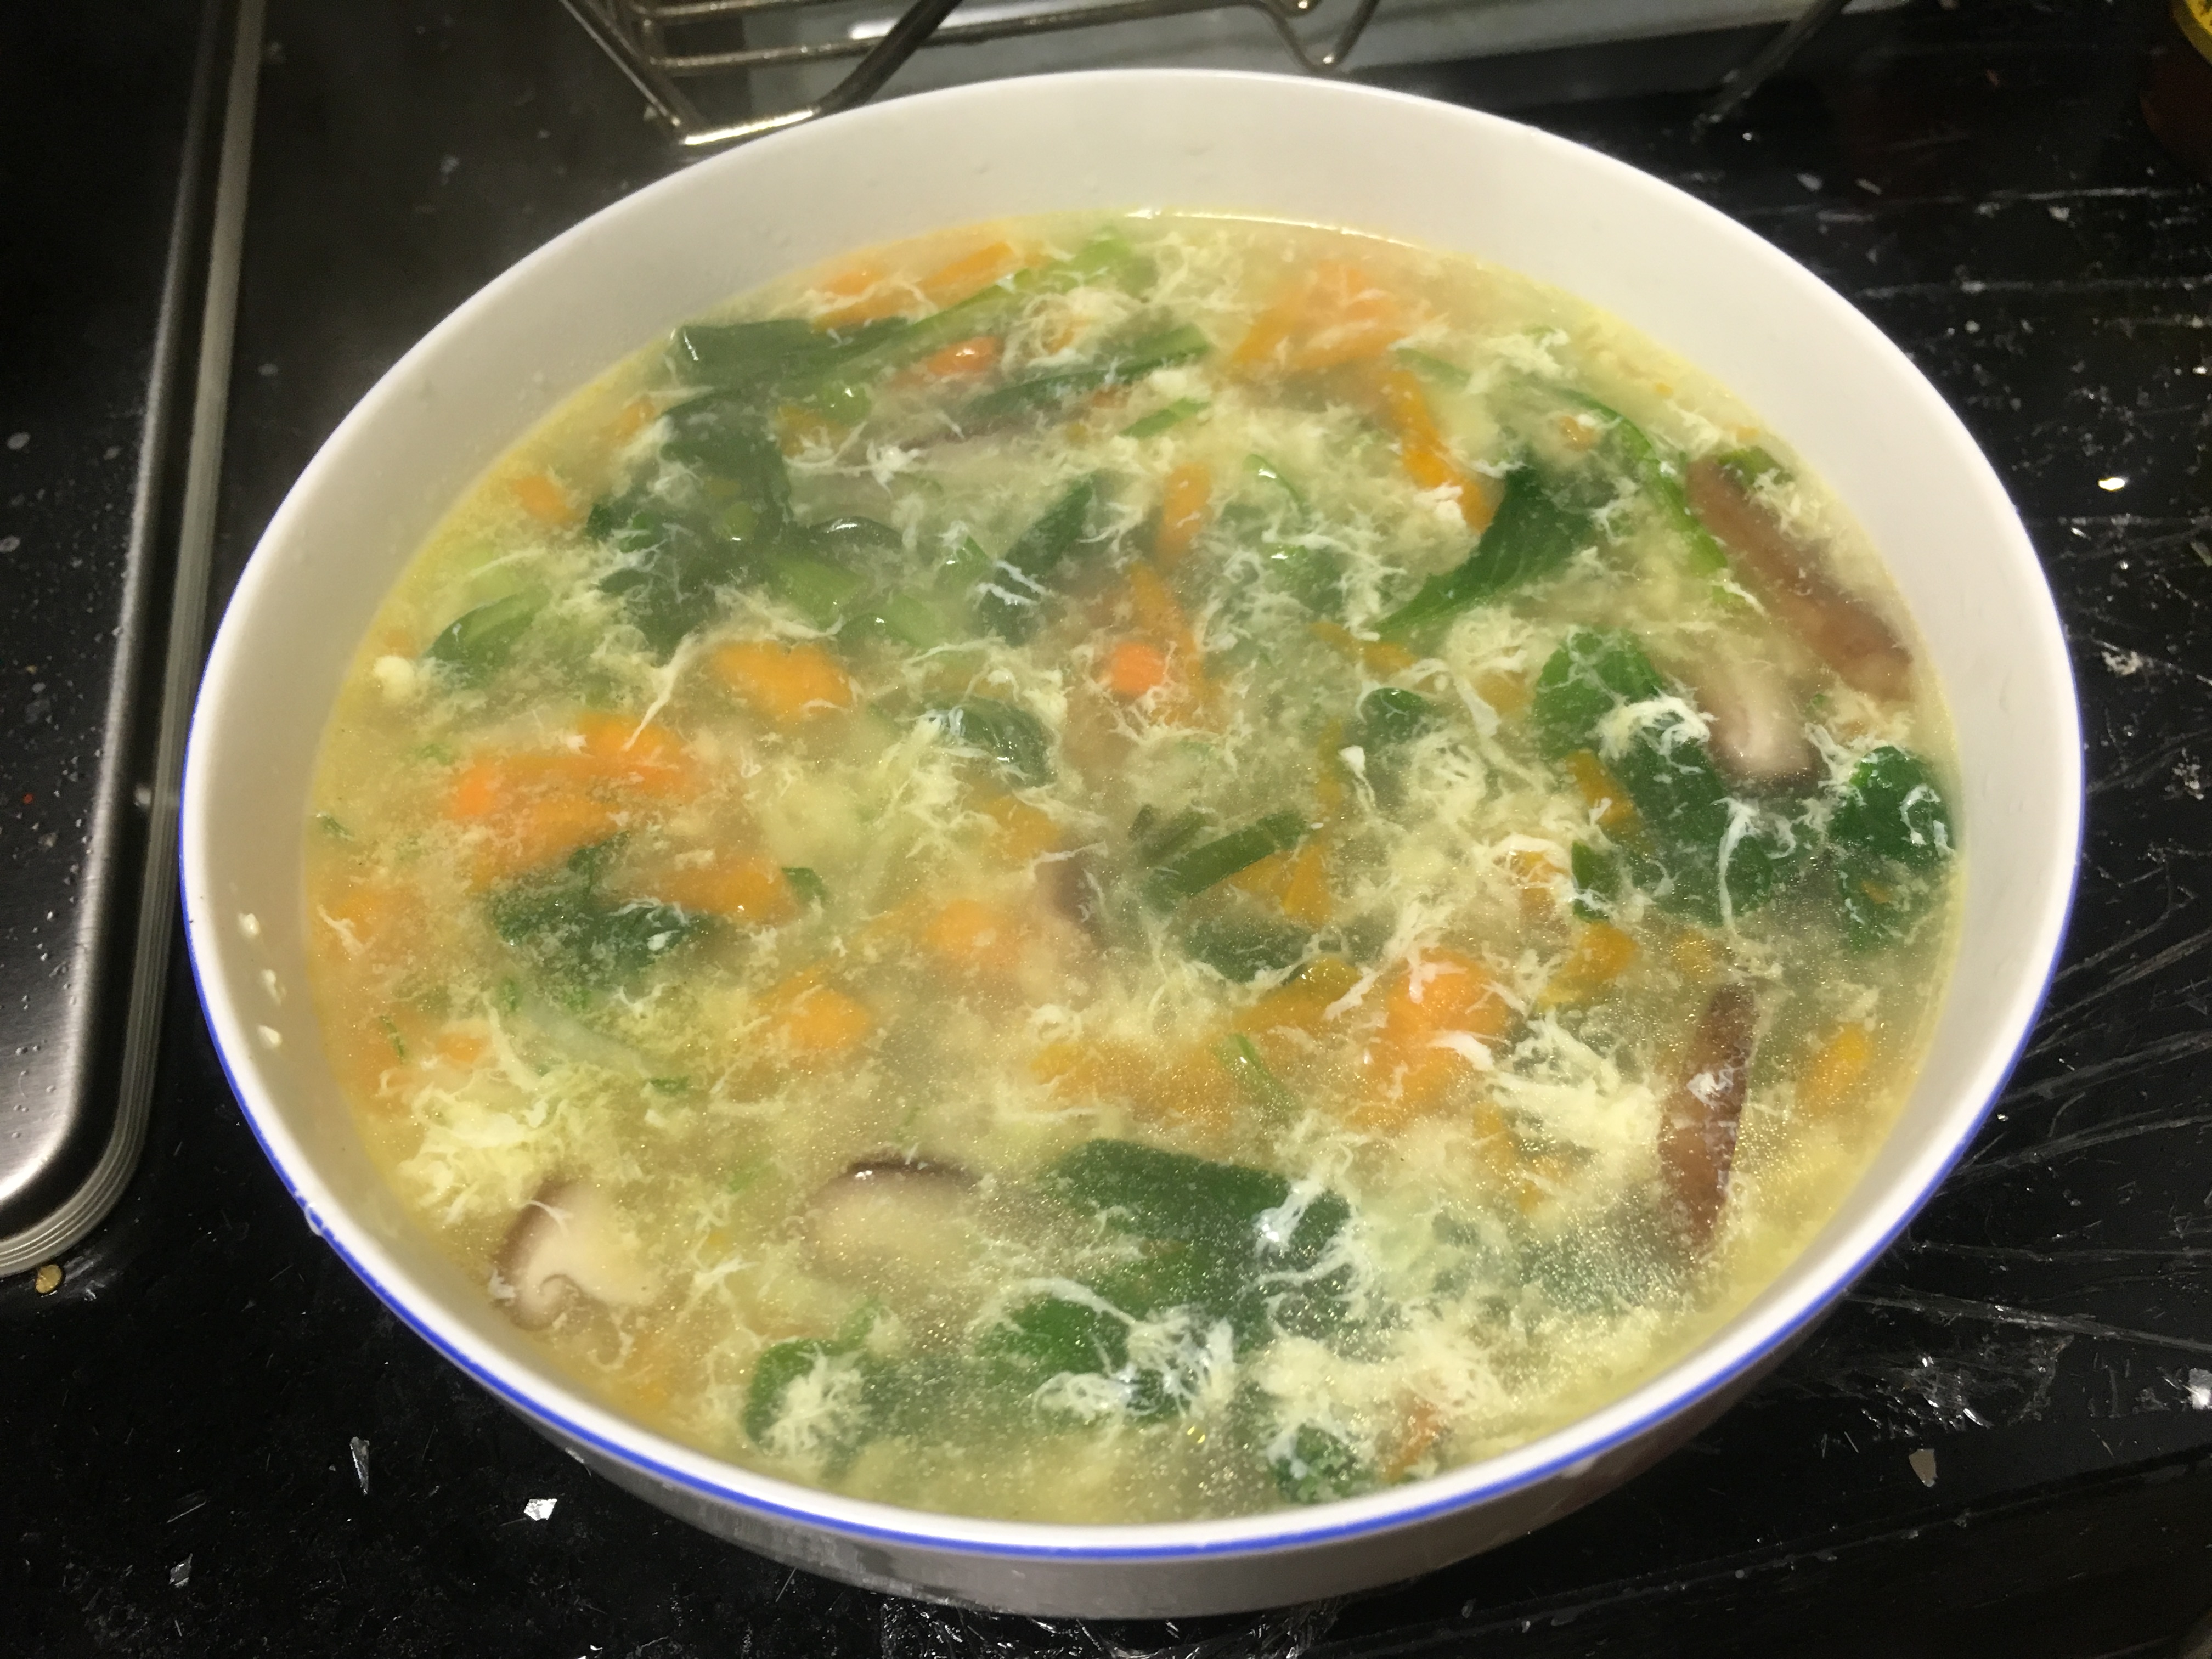 芙蓉鲜蔬汤的做法